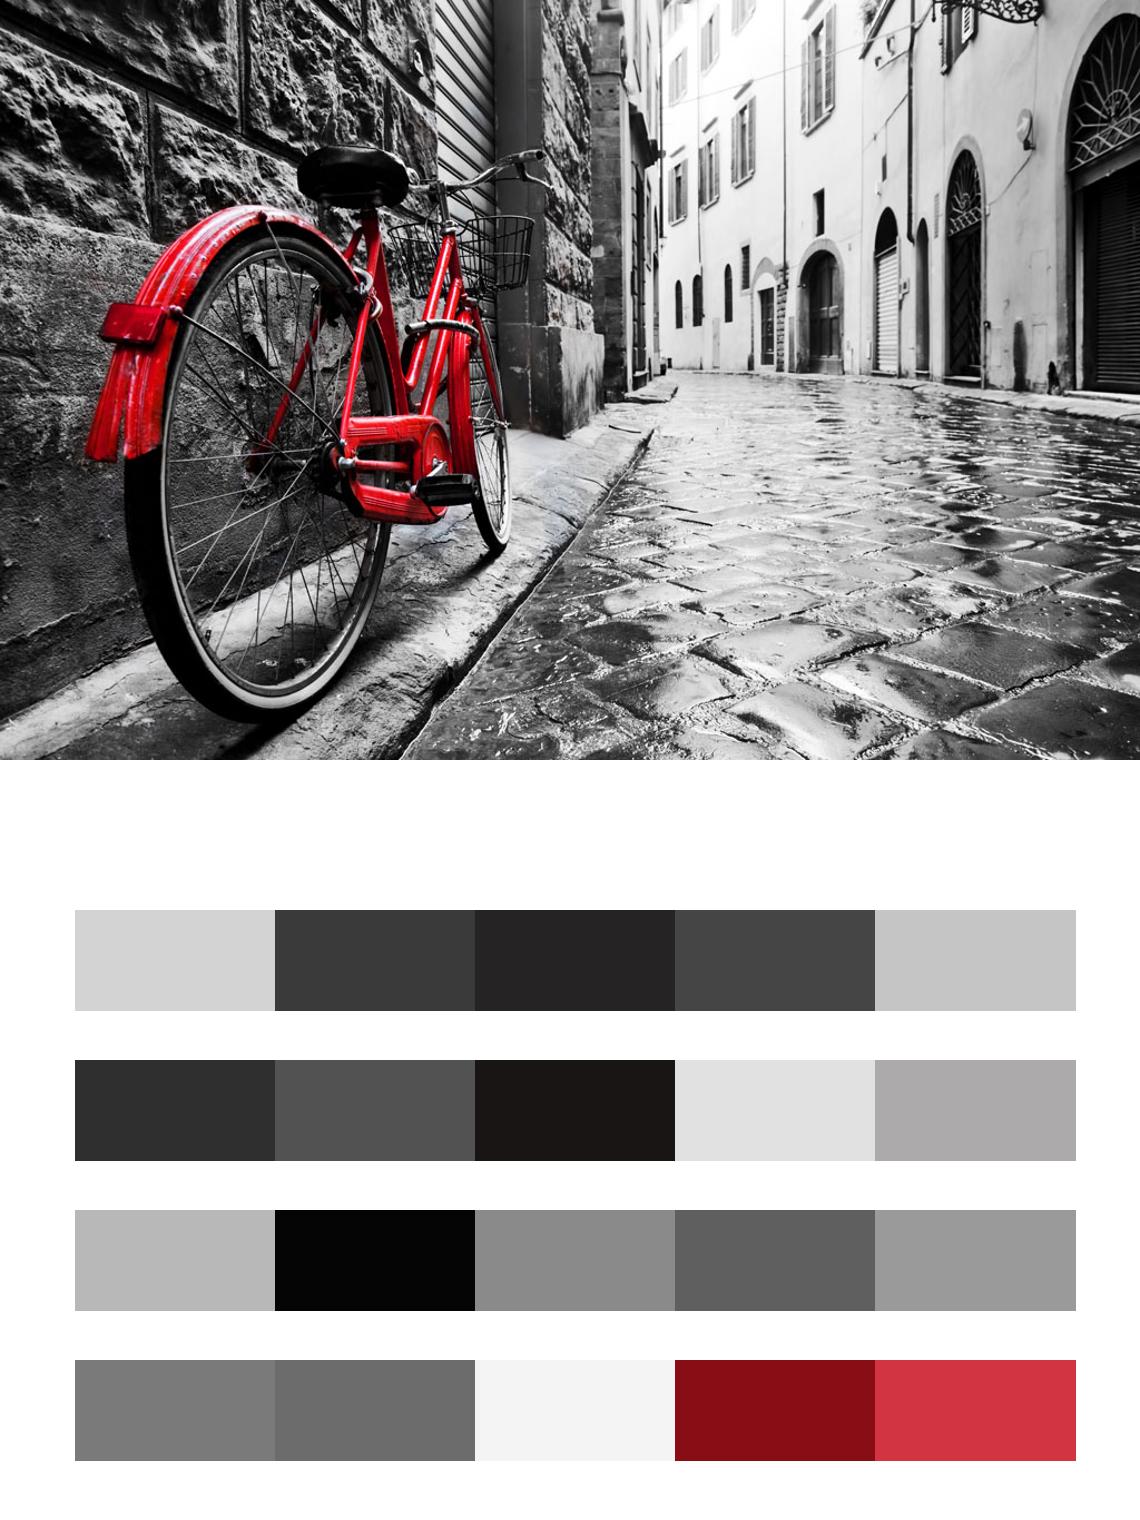 Красный велосипед на улочке Лондона цвета